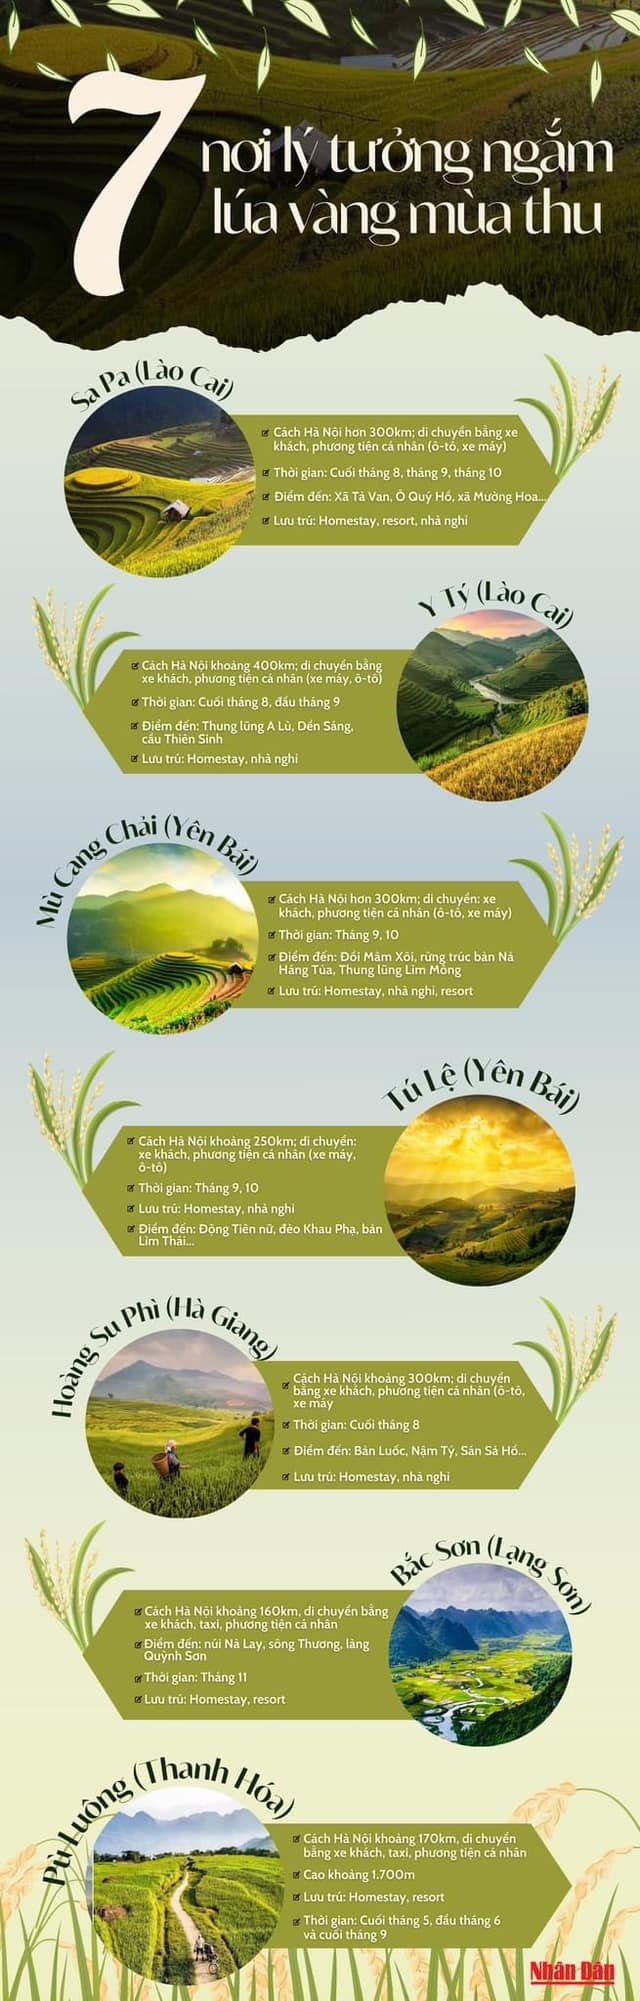 7 nơi lý tưởng ngắm lúa vàng mùa thu